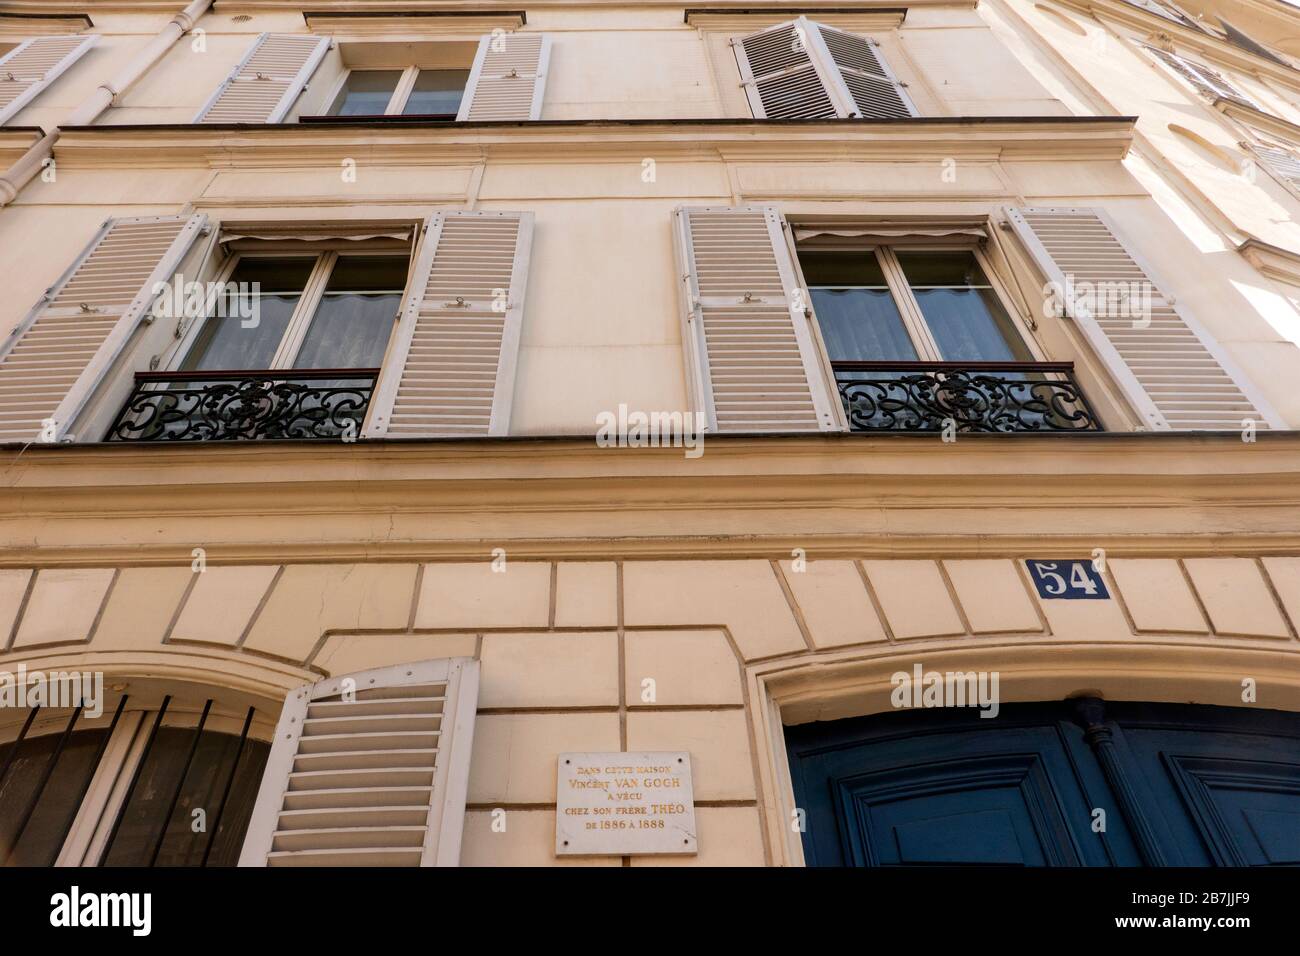 Vincent Van Gogh house 54 rue Lepic Paris France Stock Photo